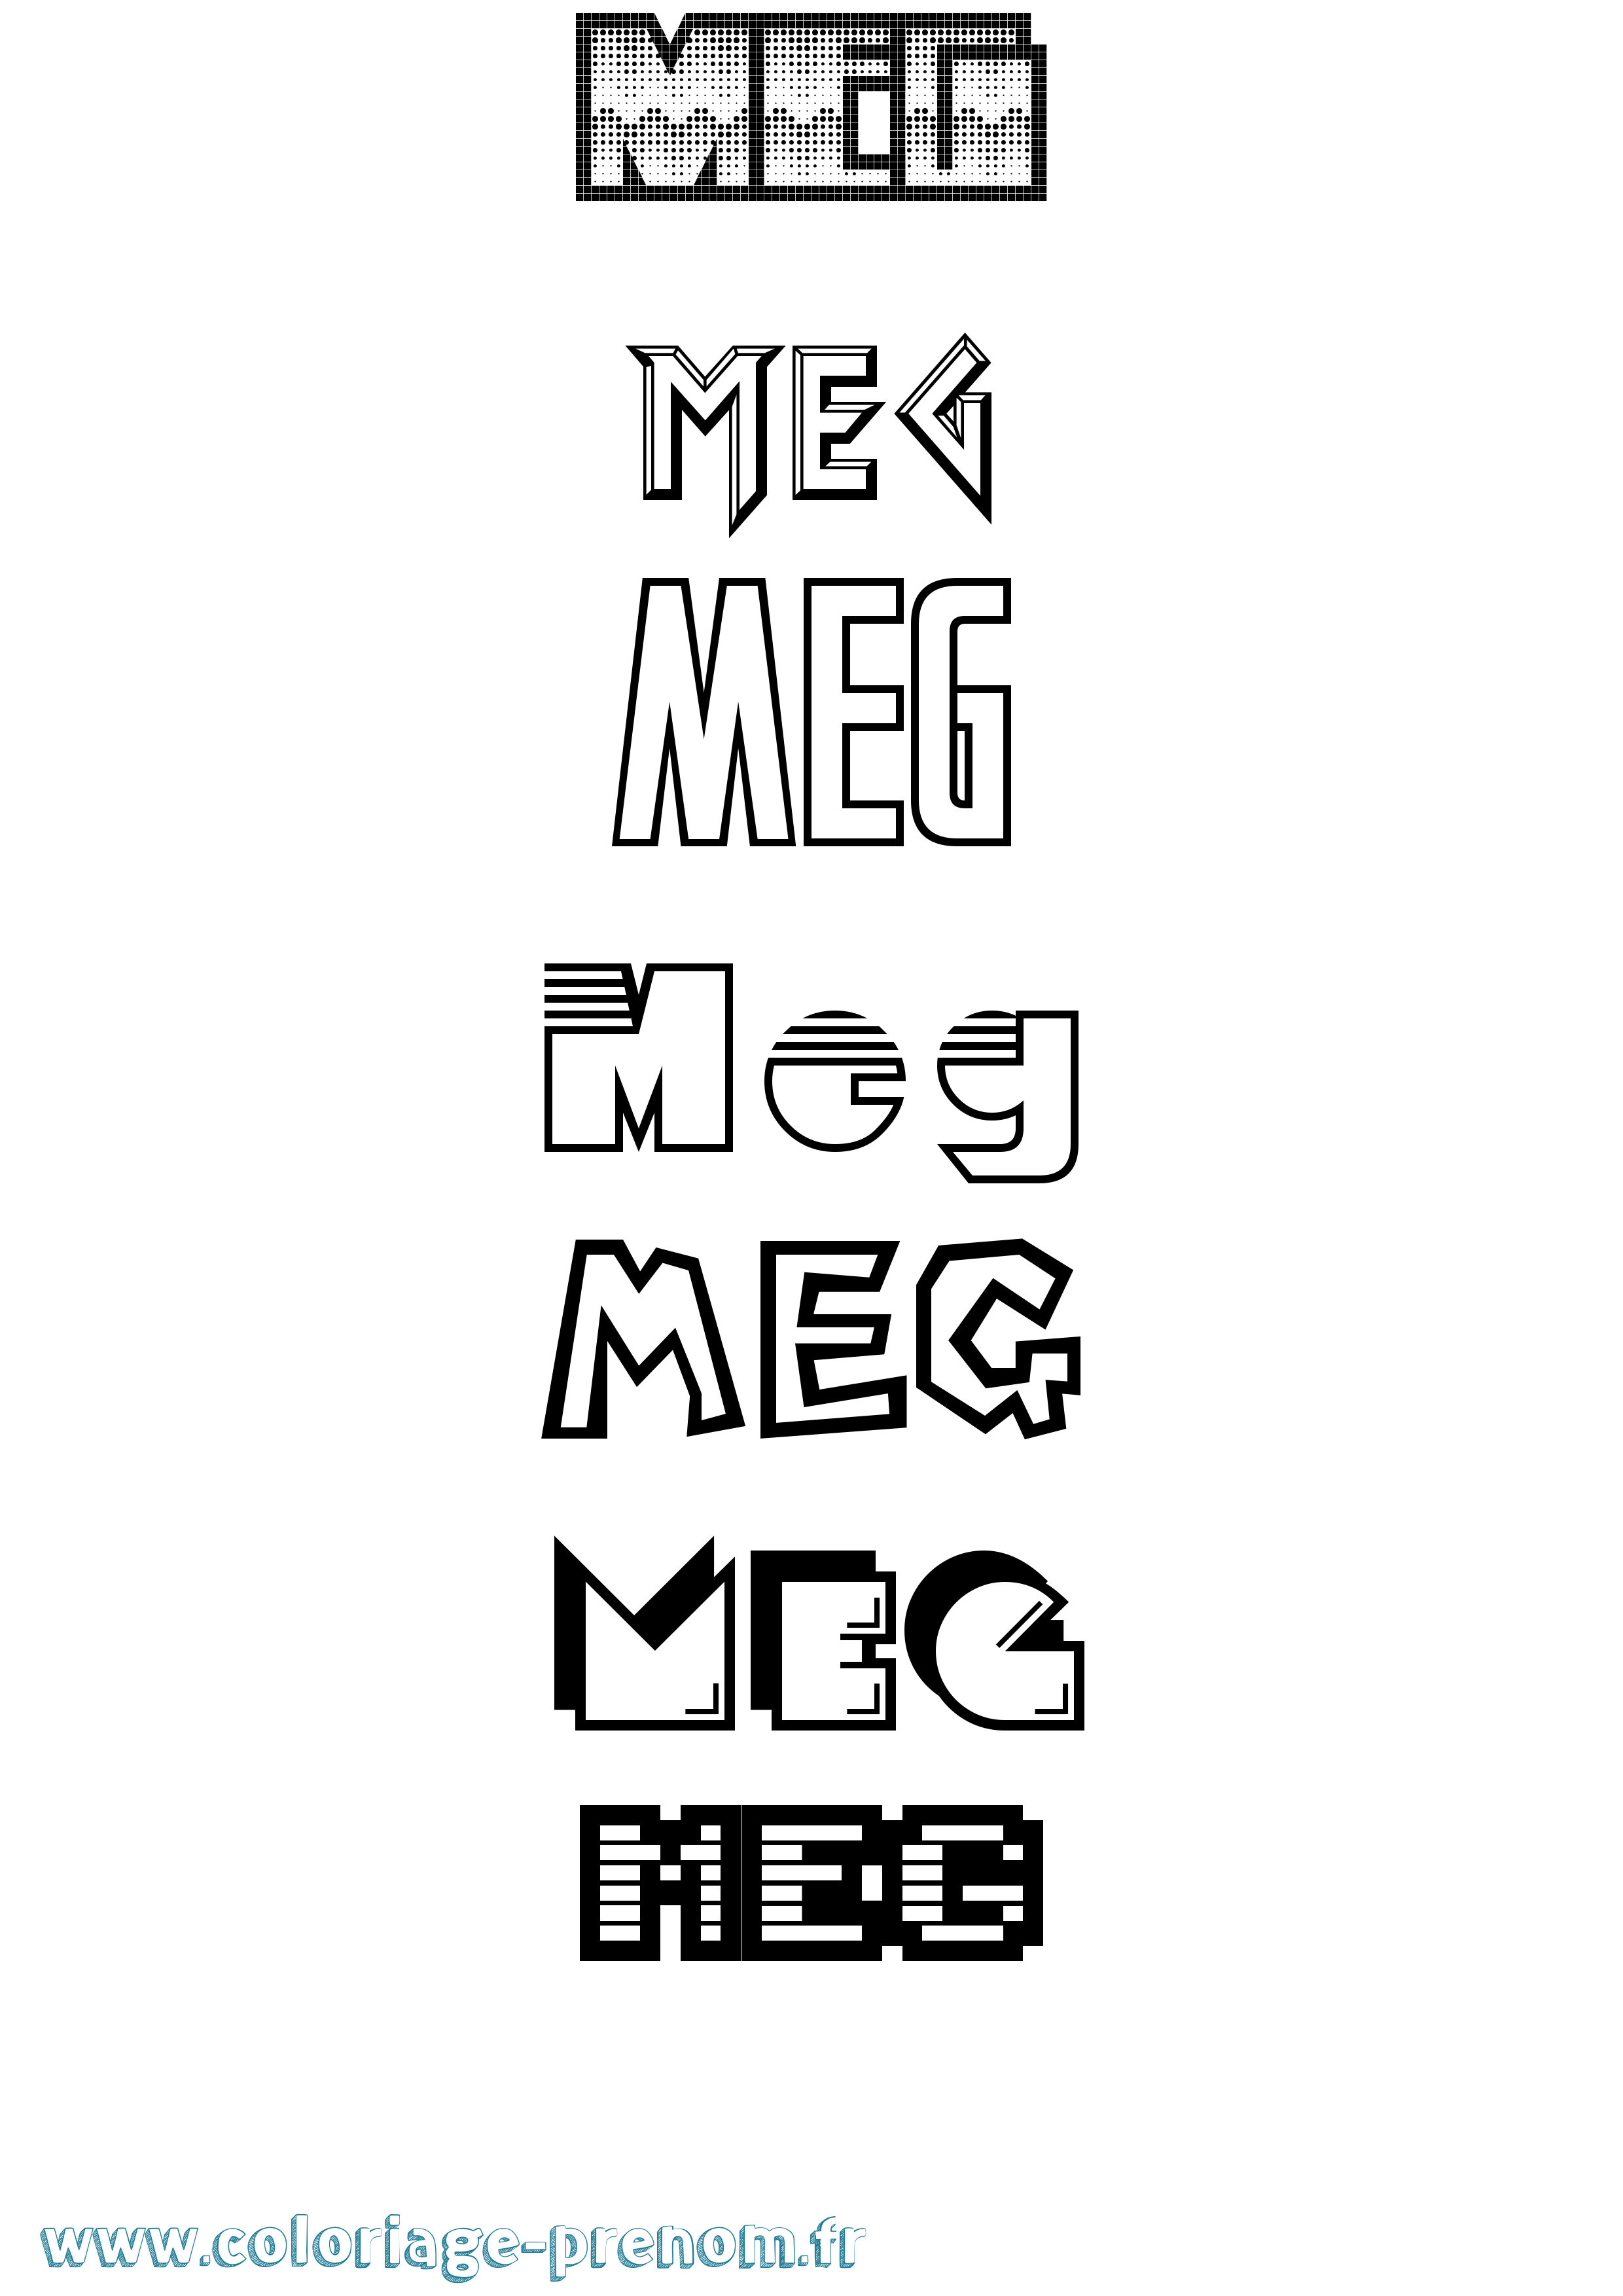 Coloriage prénom Meg Jeux Vidéos